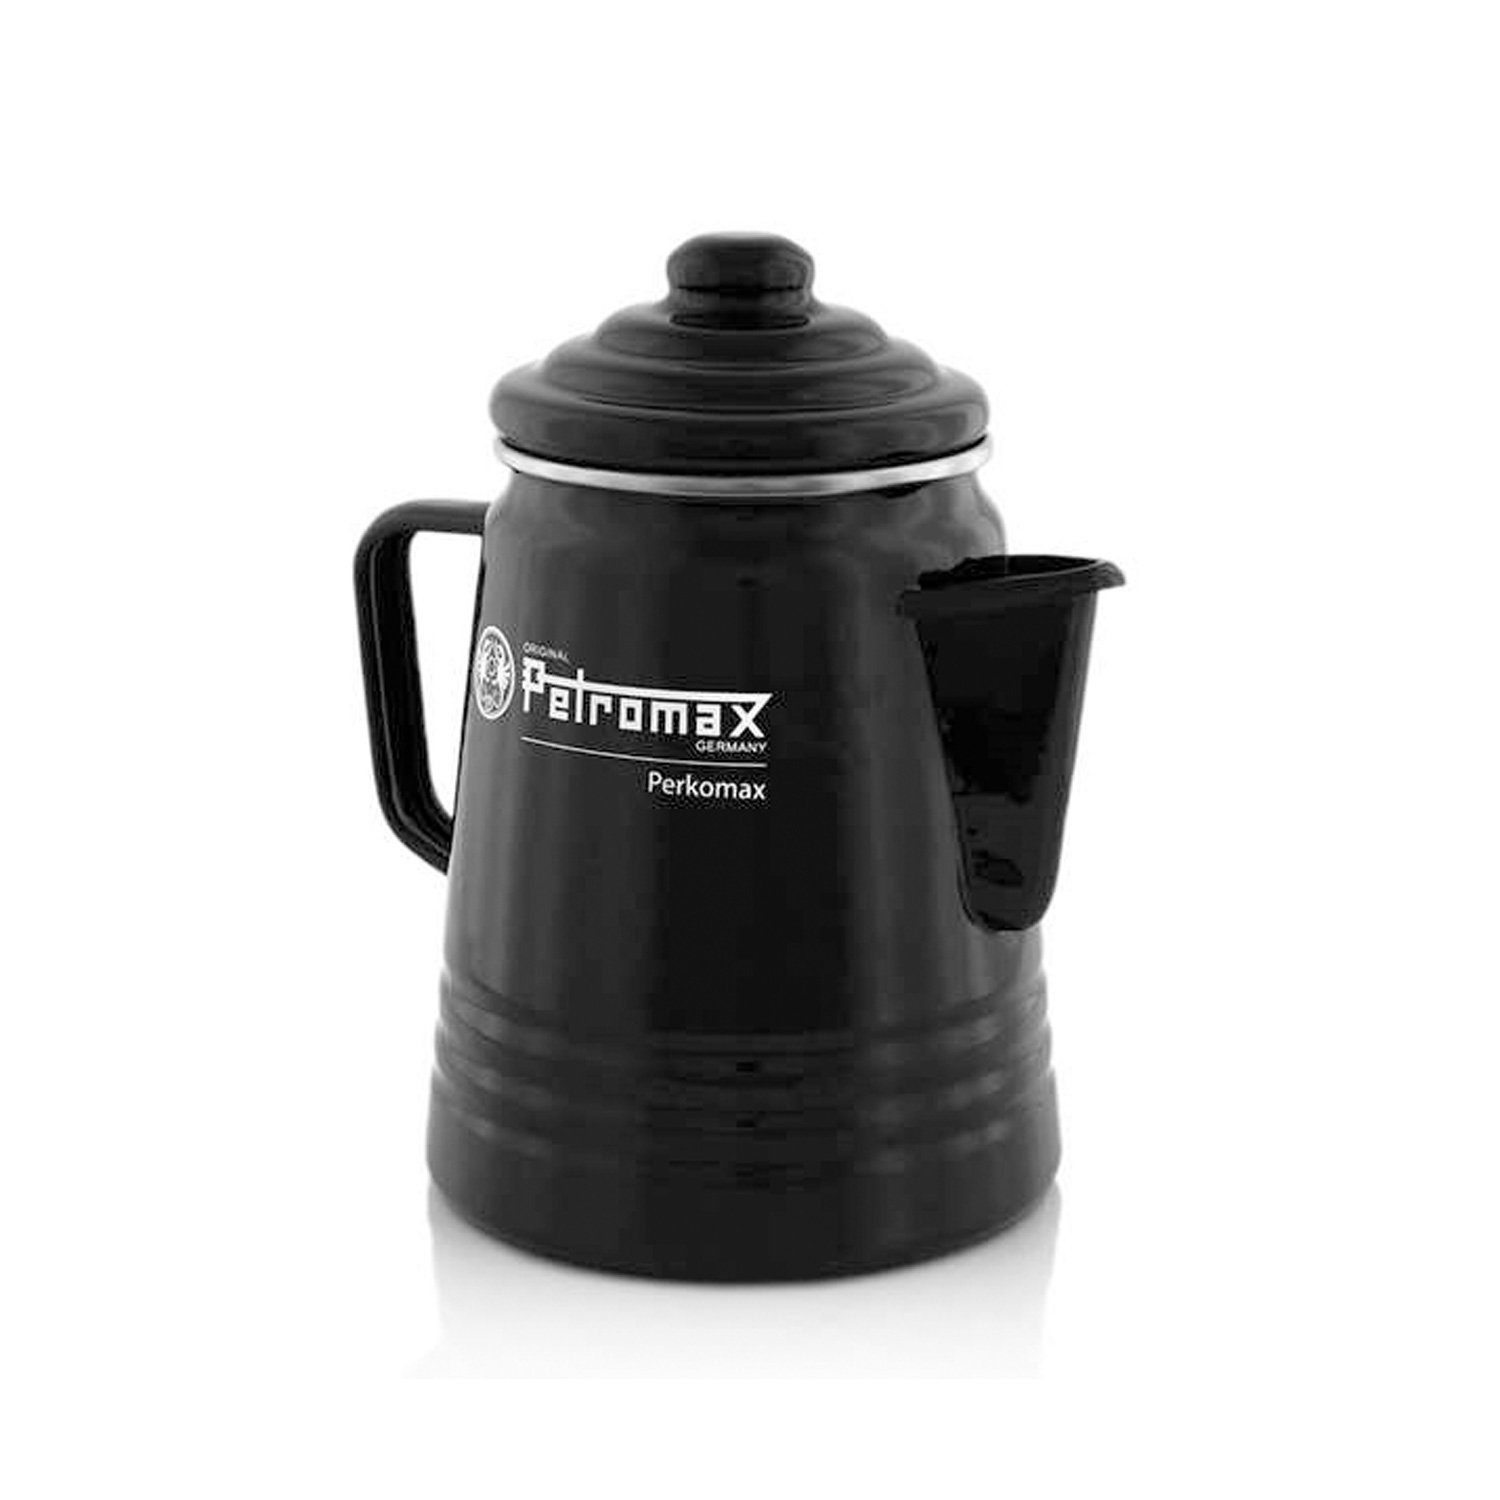 Perkolator Perkolator Petromax Kocher Kaffee schwarz, Kanne 1.3l Kaffeekanne 1,3l Tee Petromax per-9-s